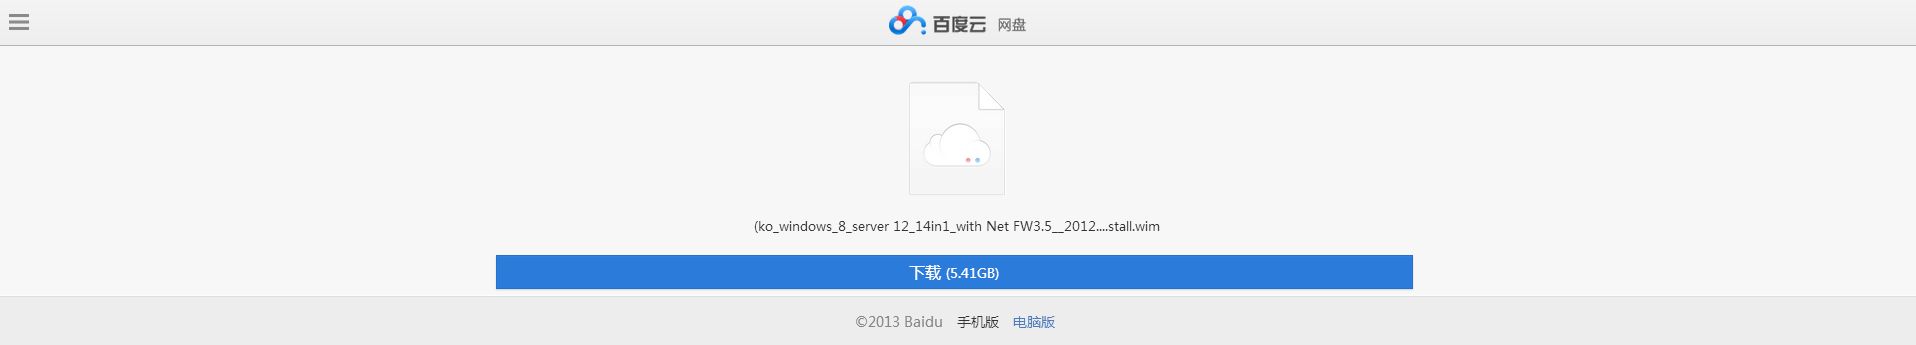 (ko_windows_8_server 12_14in1_with Net FW3_5__2012_10_13)install_wimI百度云 网盘.jpg